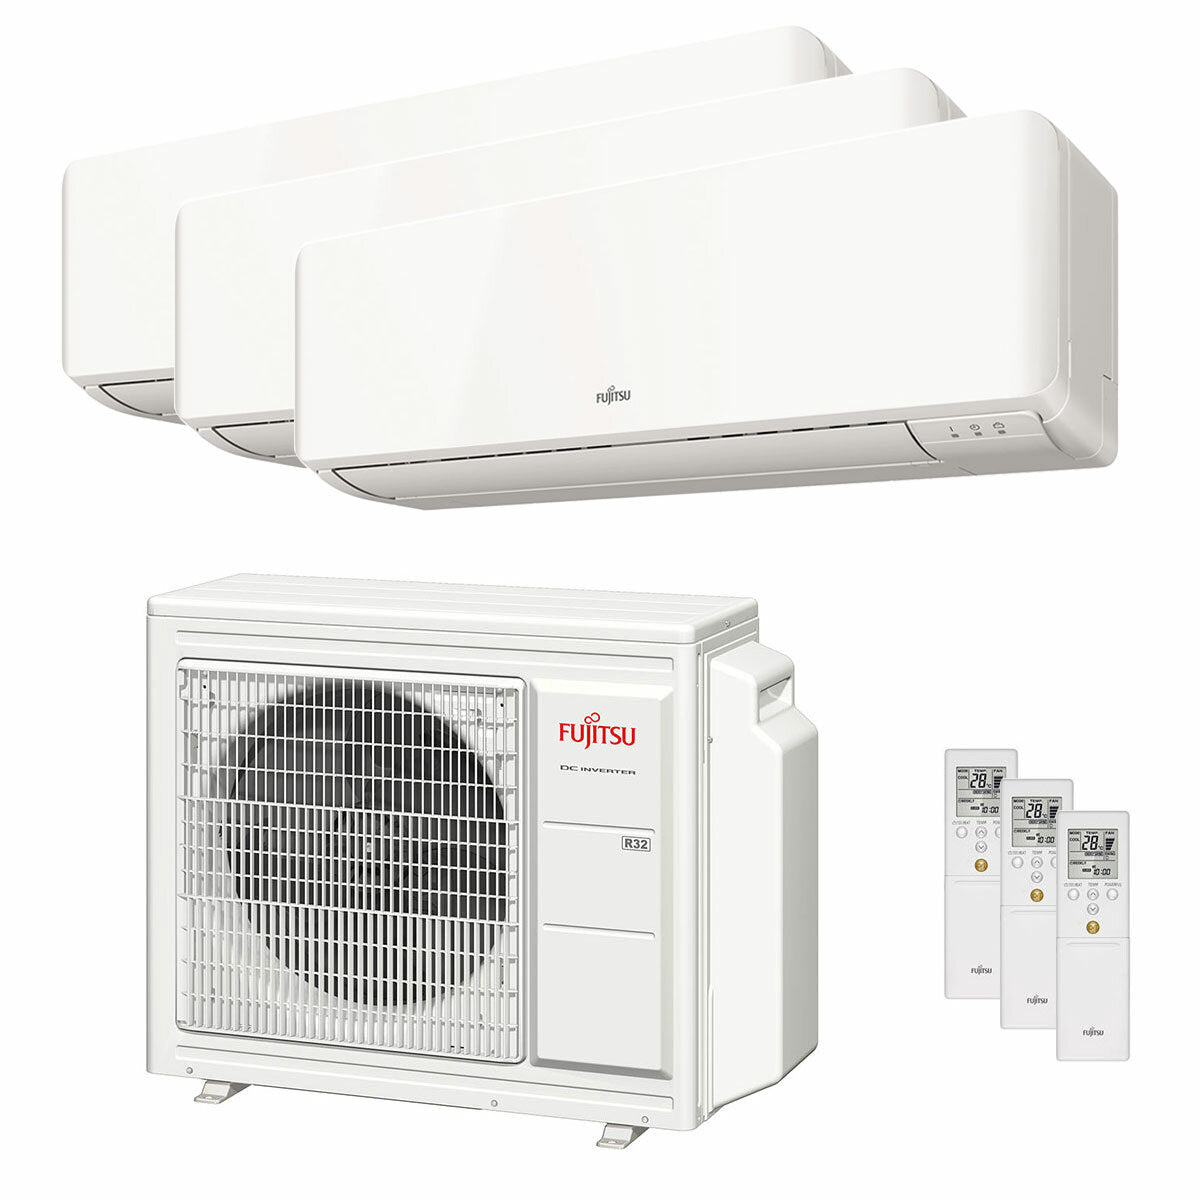 Fujitsu-Klimaanlage KM-Serie WiFi Trial Split 7000+9000+12000 BTU Wechselrichter A+++ Außeneinheit 5,4 kW